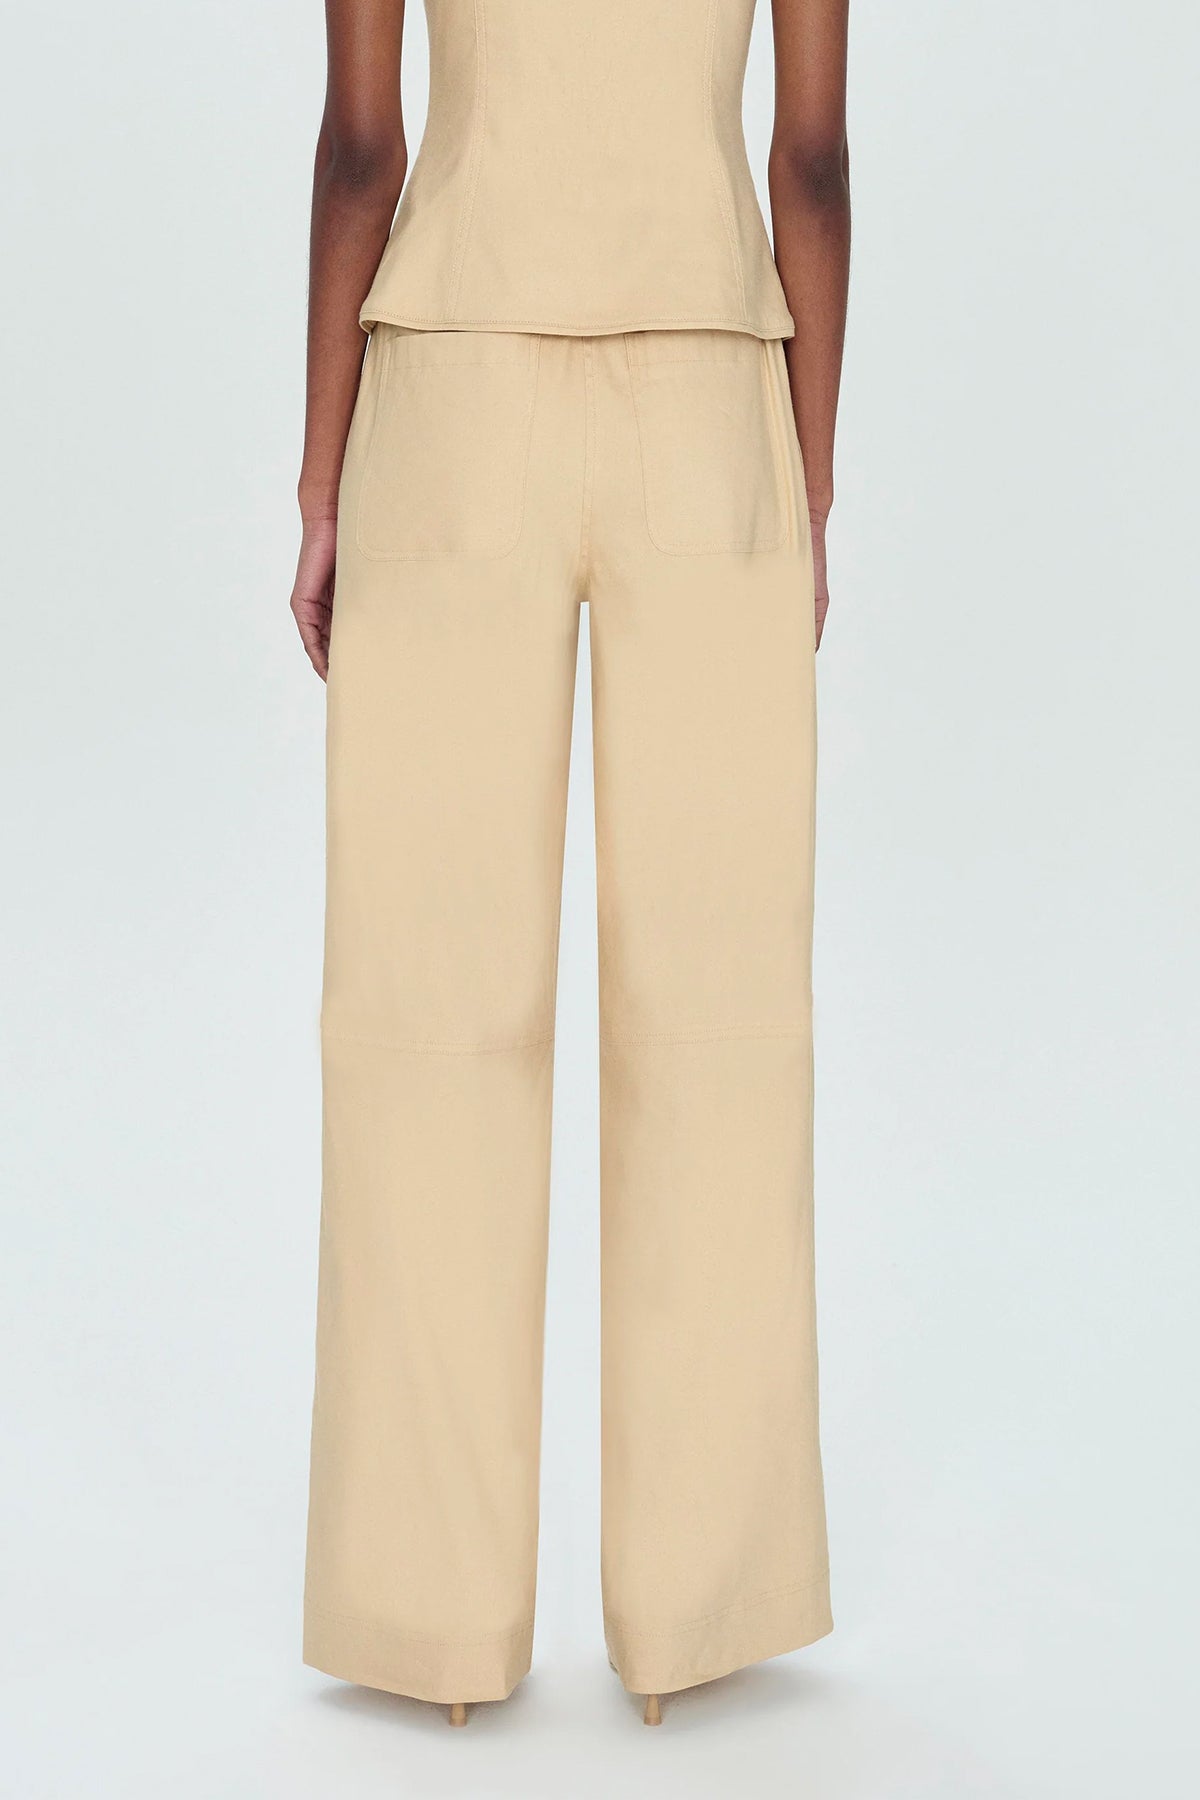 Amaya Belted Pants in Natural - shop-olivia.com